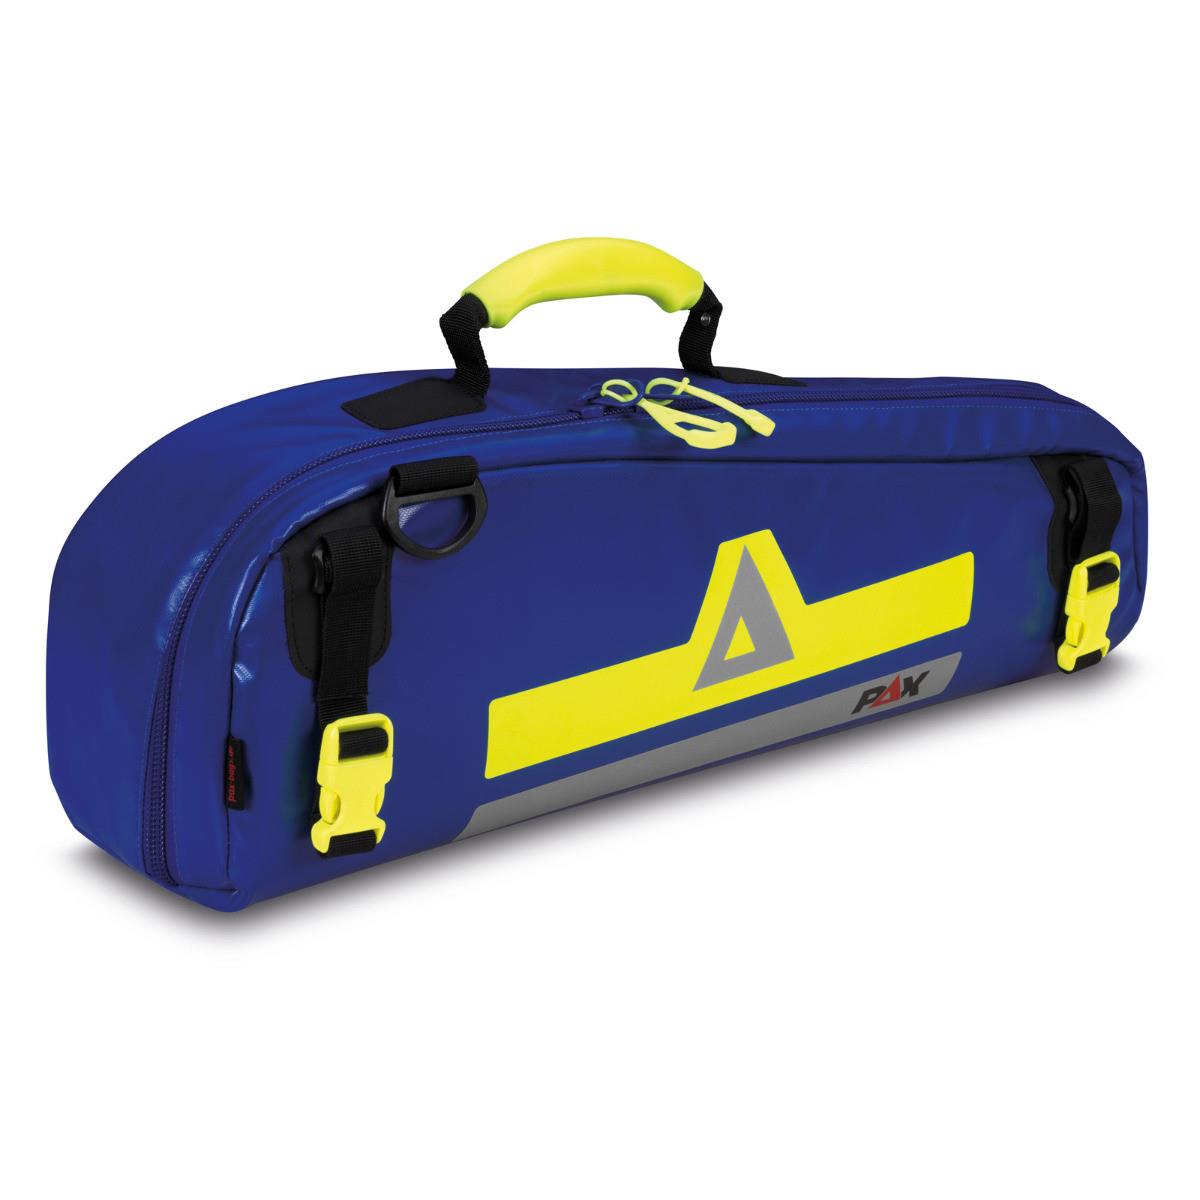 Sauerstofftasche PAX Mini-Oxy-Compact L, 2019, blau